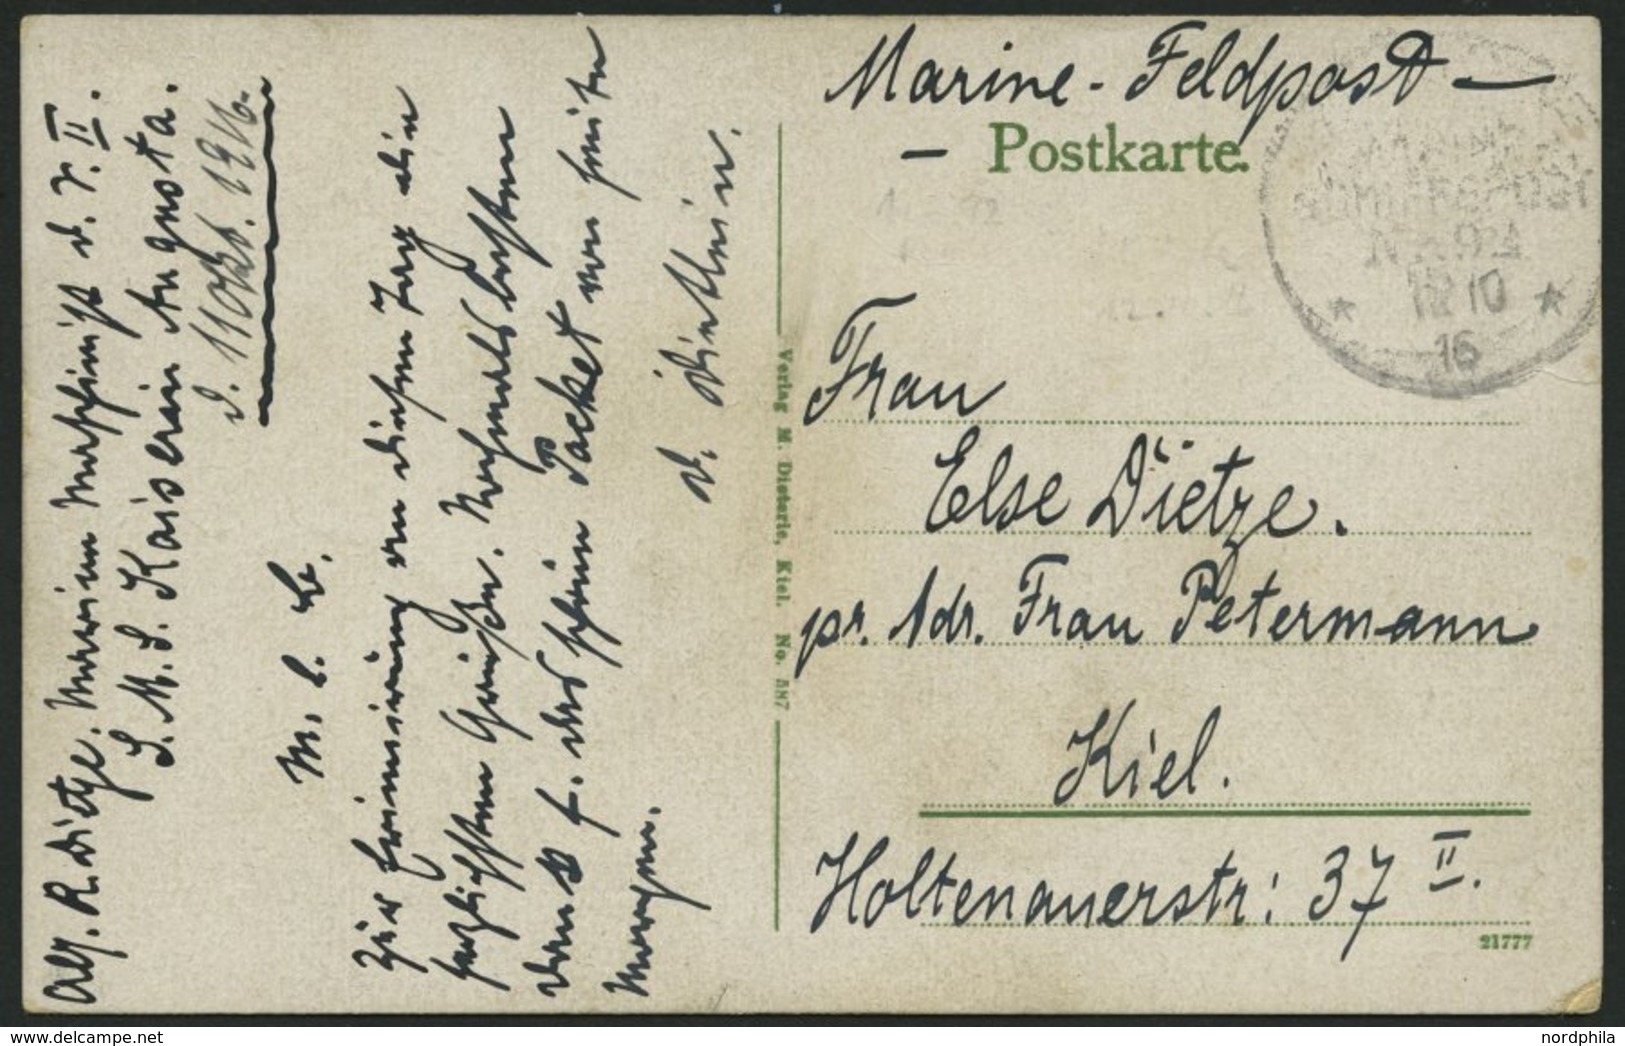 MSP VON 1914 - 1918 92 (Großer Kreuzer KAISERIN AUGUSTA), 11.10.1916, Feldpost-Ansichtskarte Von Bord Der Kaiserin Augus - Schiffahrt